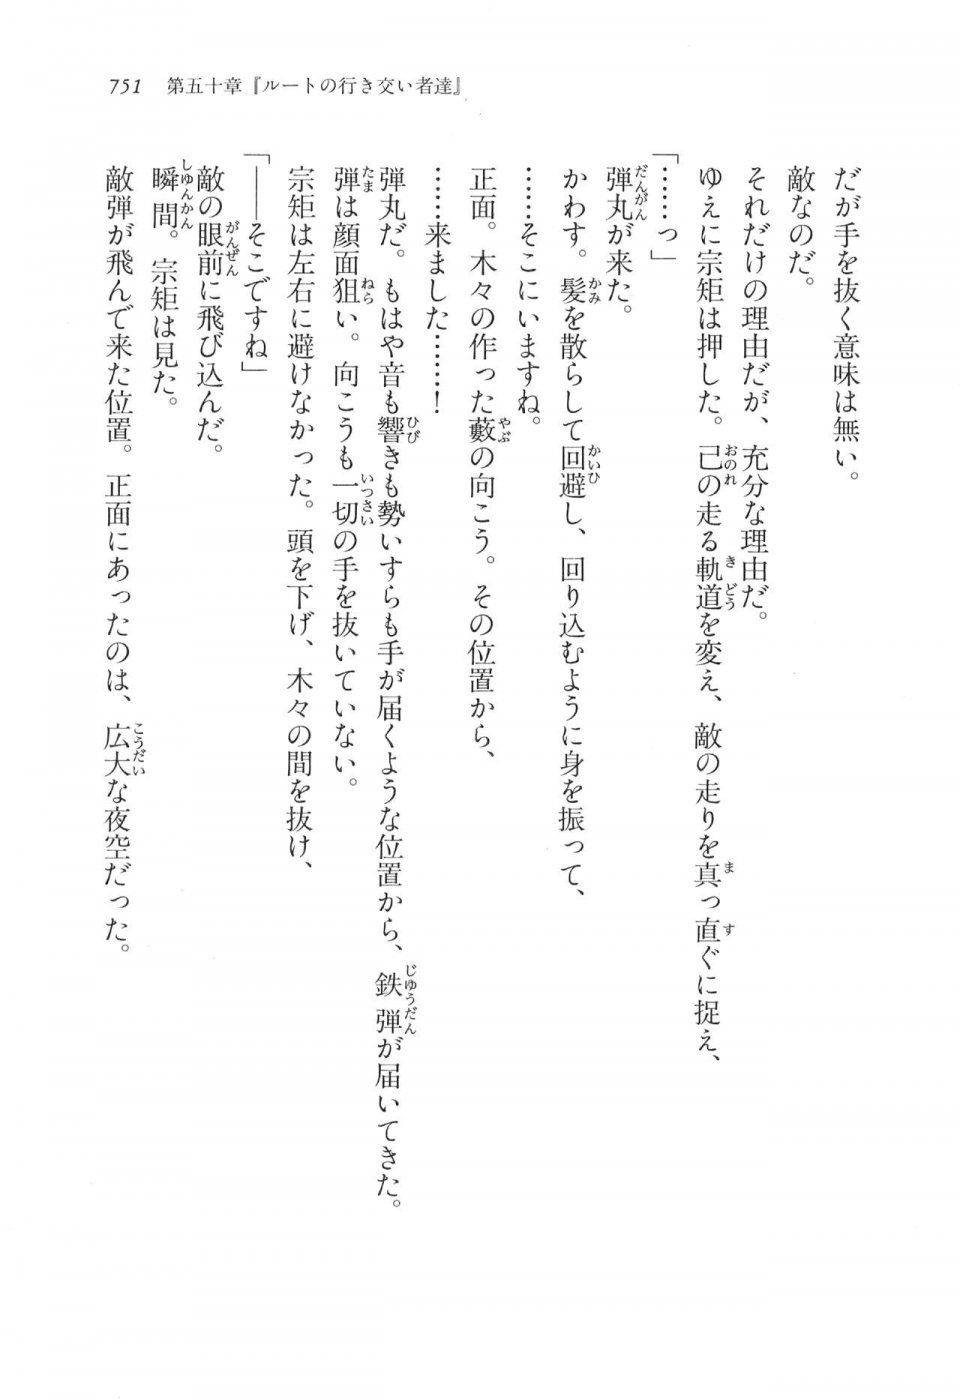 Kyoukai Senjou no Horizon LN Vol 17(7B) - Photo #753